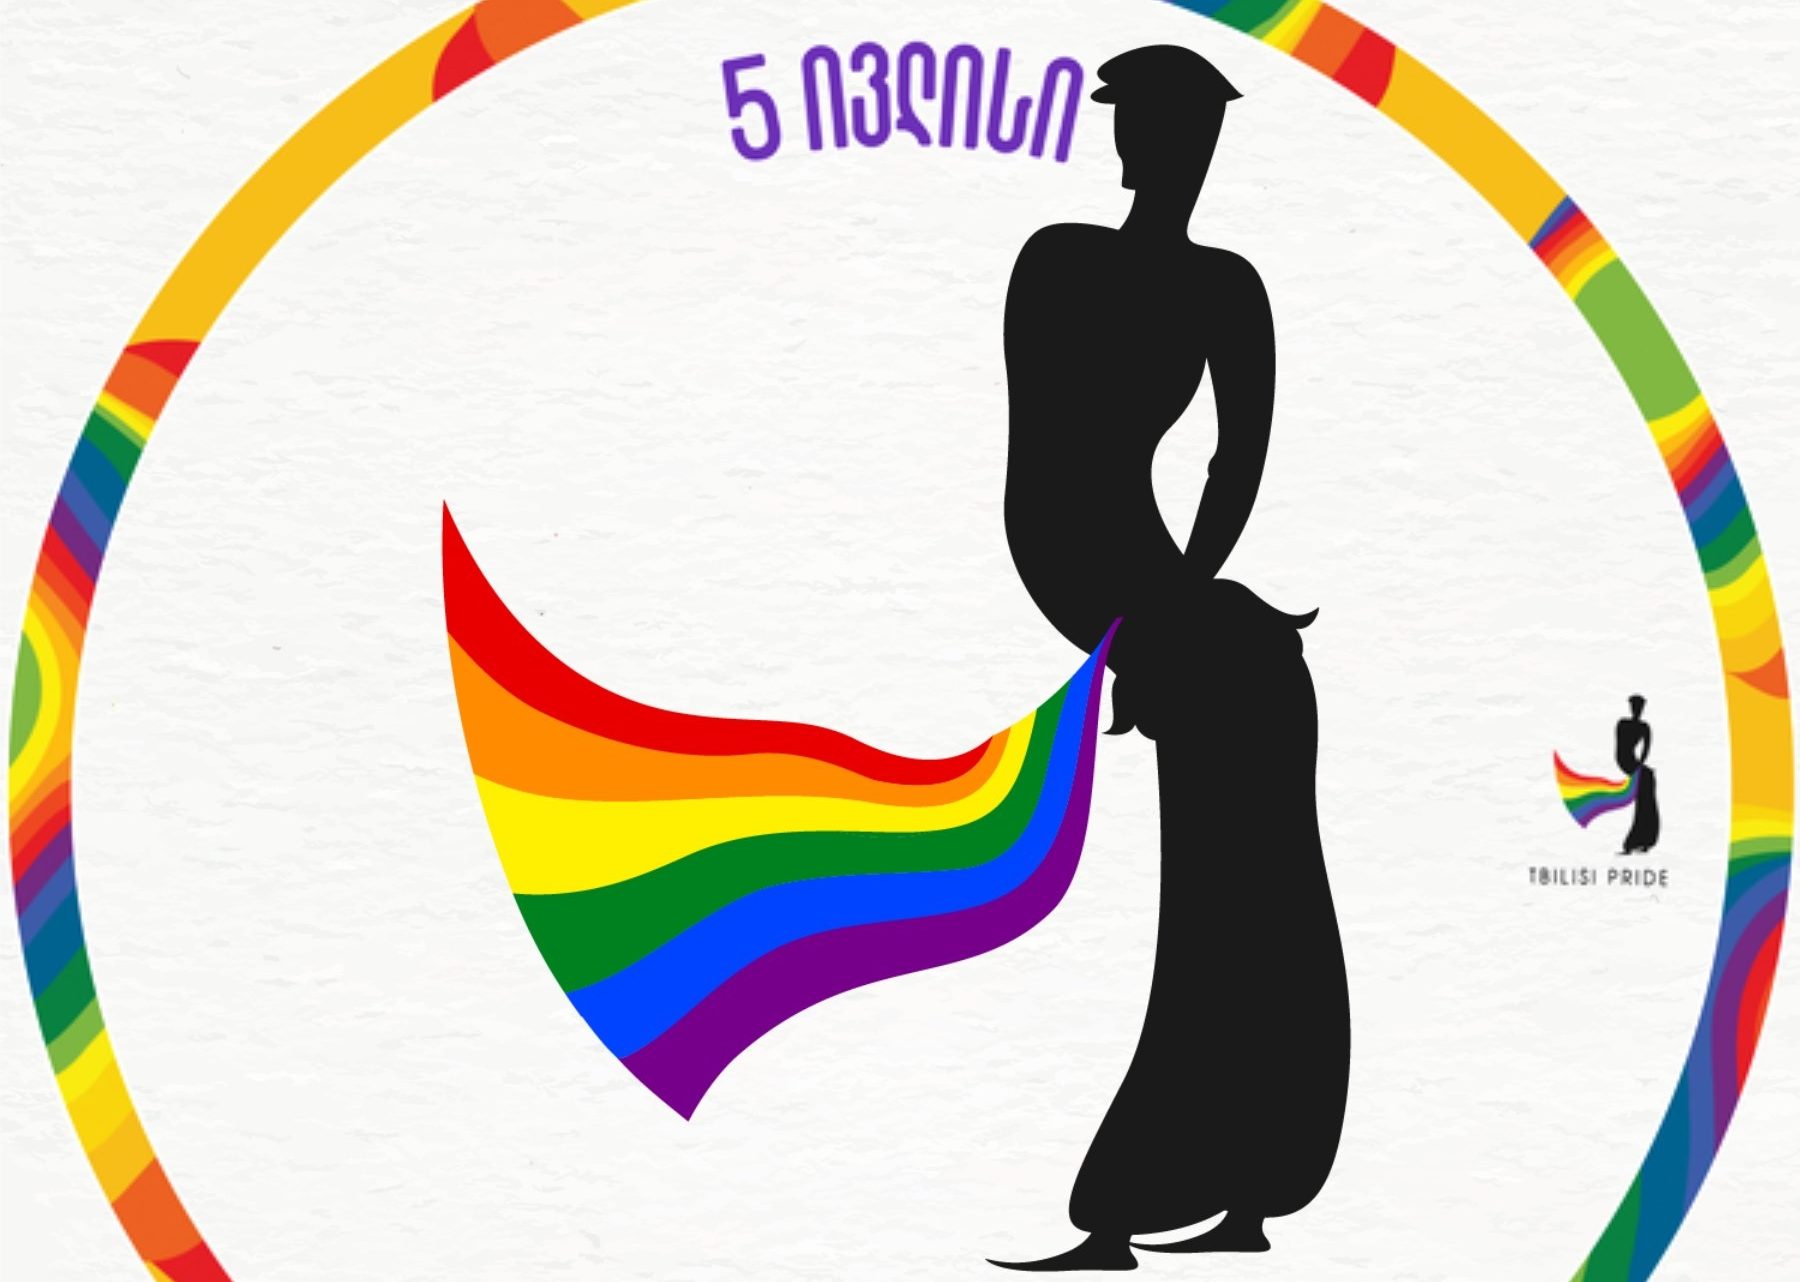 tbilisi pride e1625465978777 Tbilisi Pride Tbilisi Pride